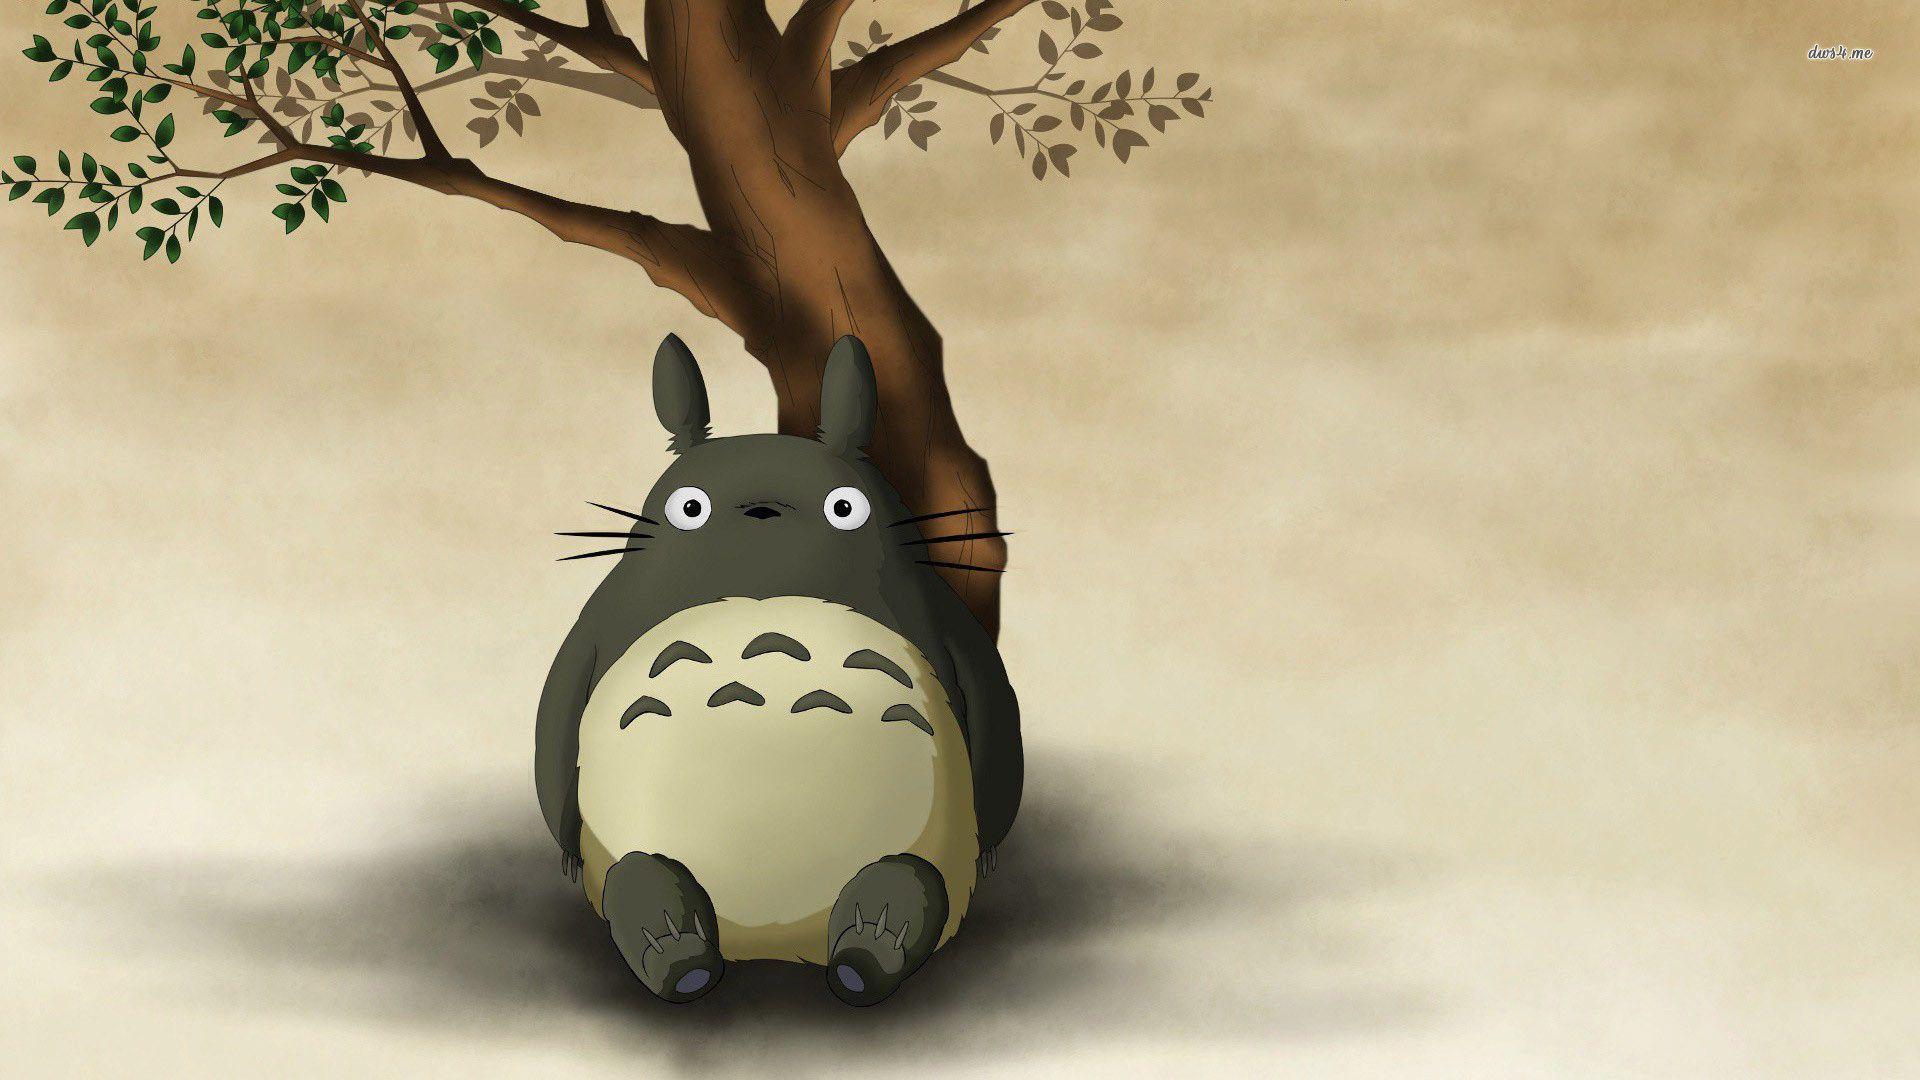 12759 Totoro My Neighbor